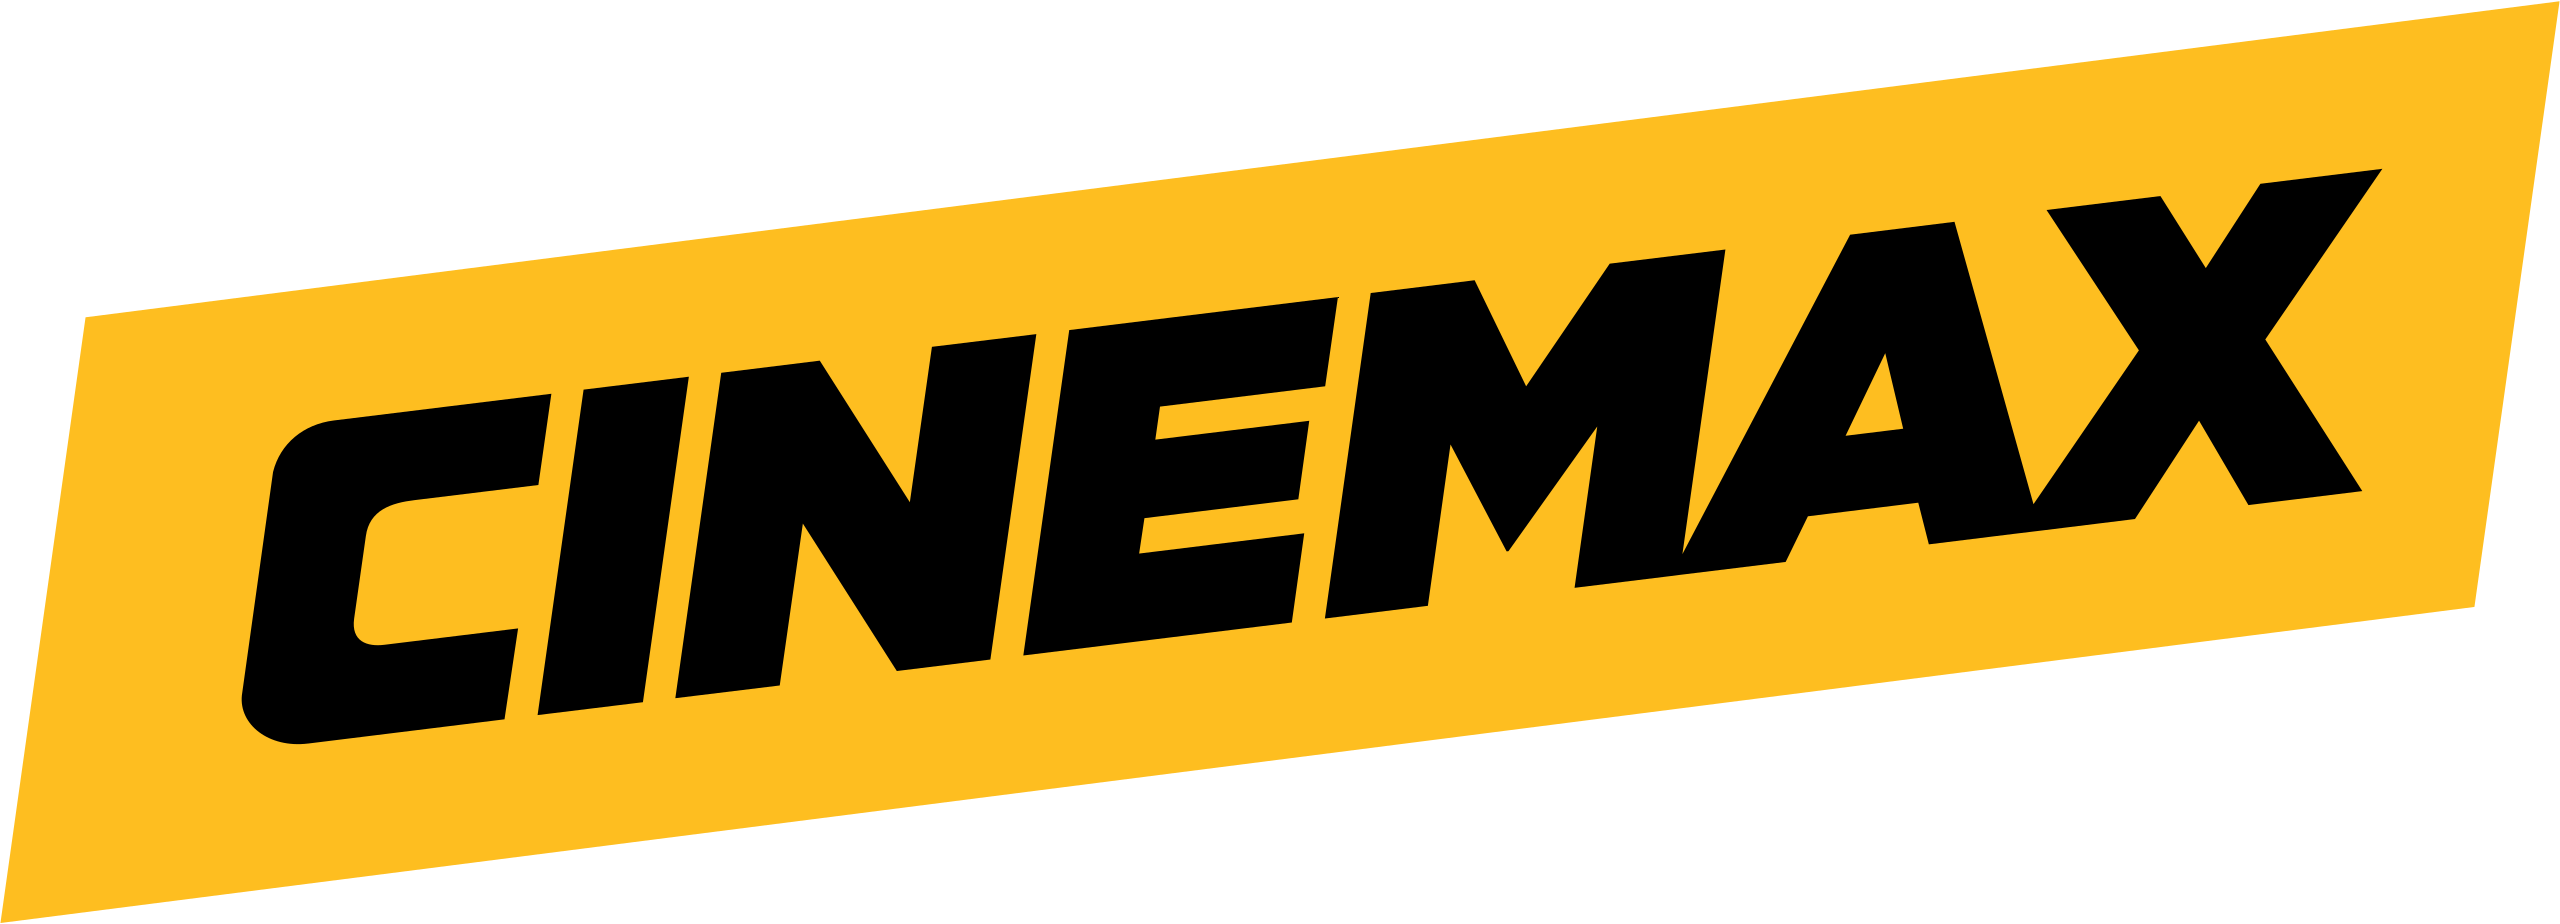 watch Cinemax in Australia